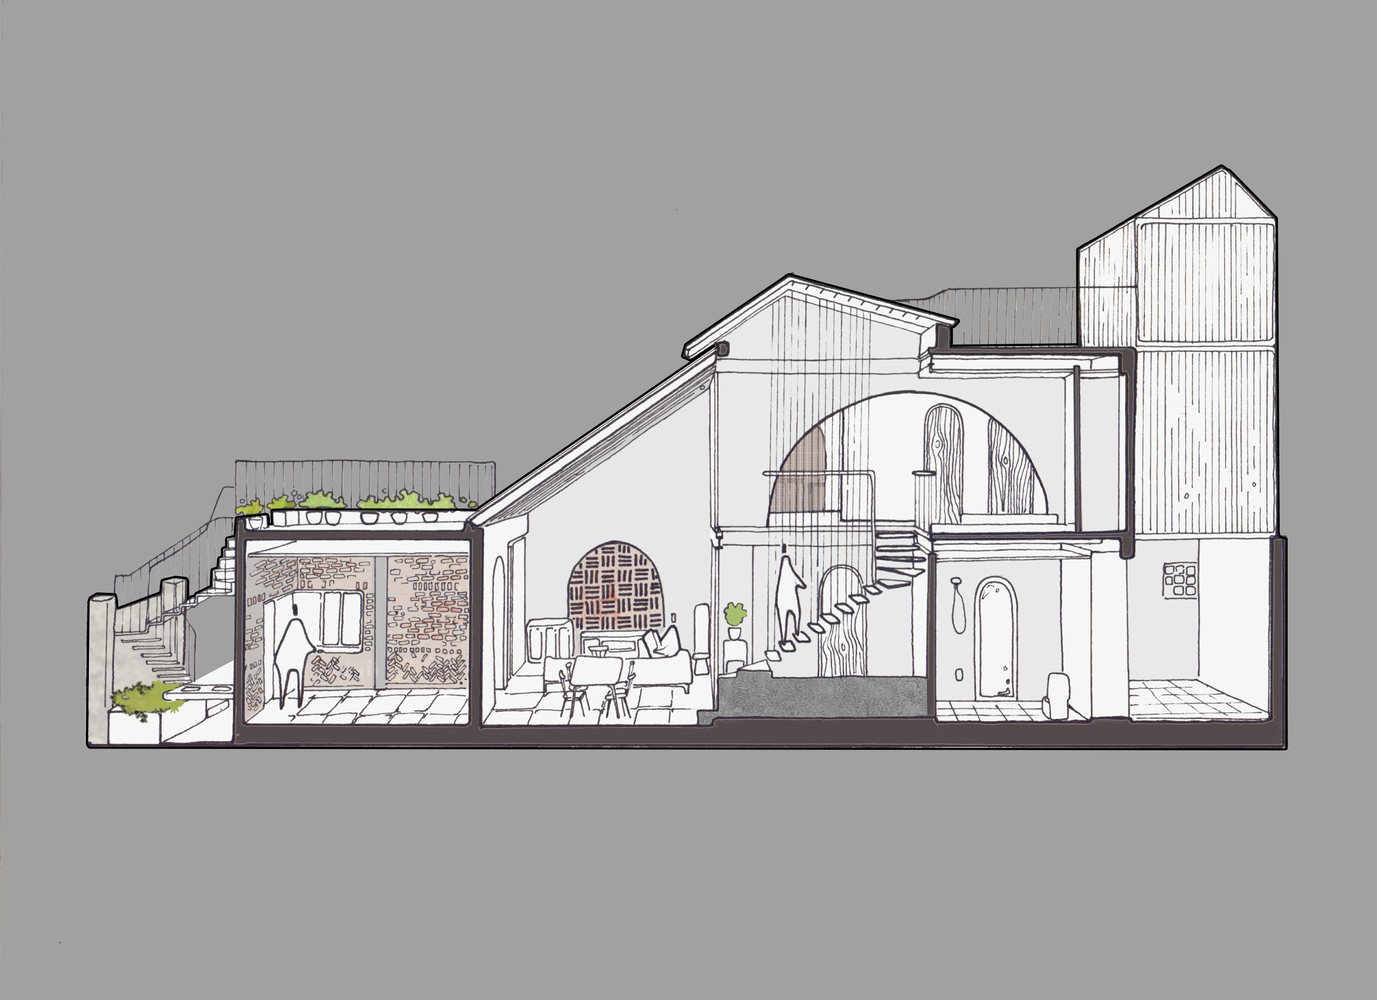 Thiết kế giản dị, hoài cổ của ngôi nhà gạch ở Đà Nẵng - Ảnh 19